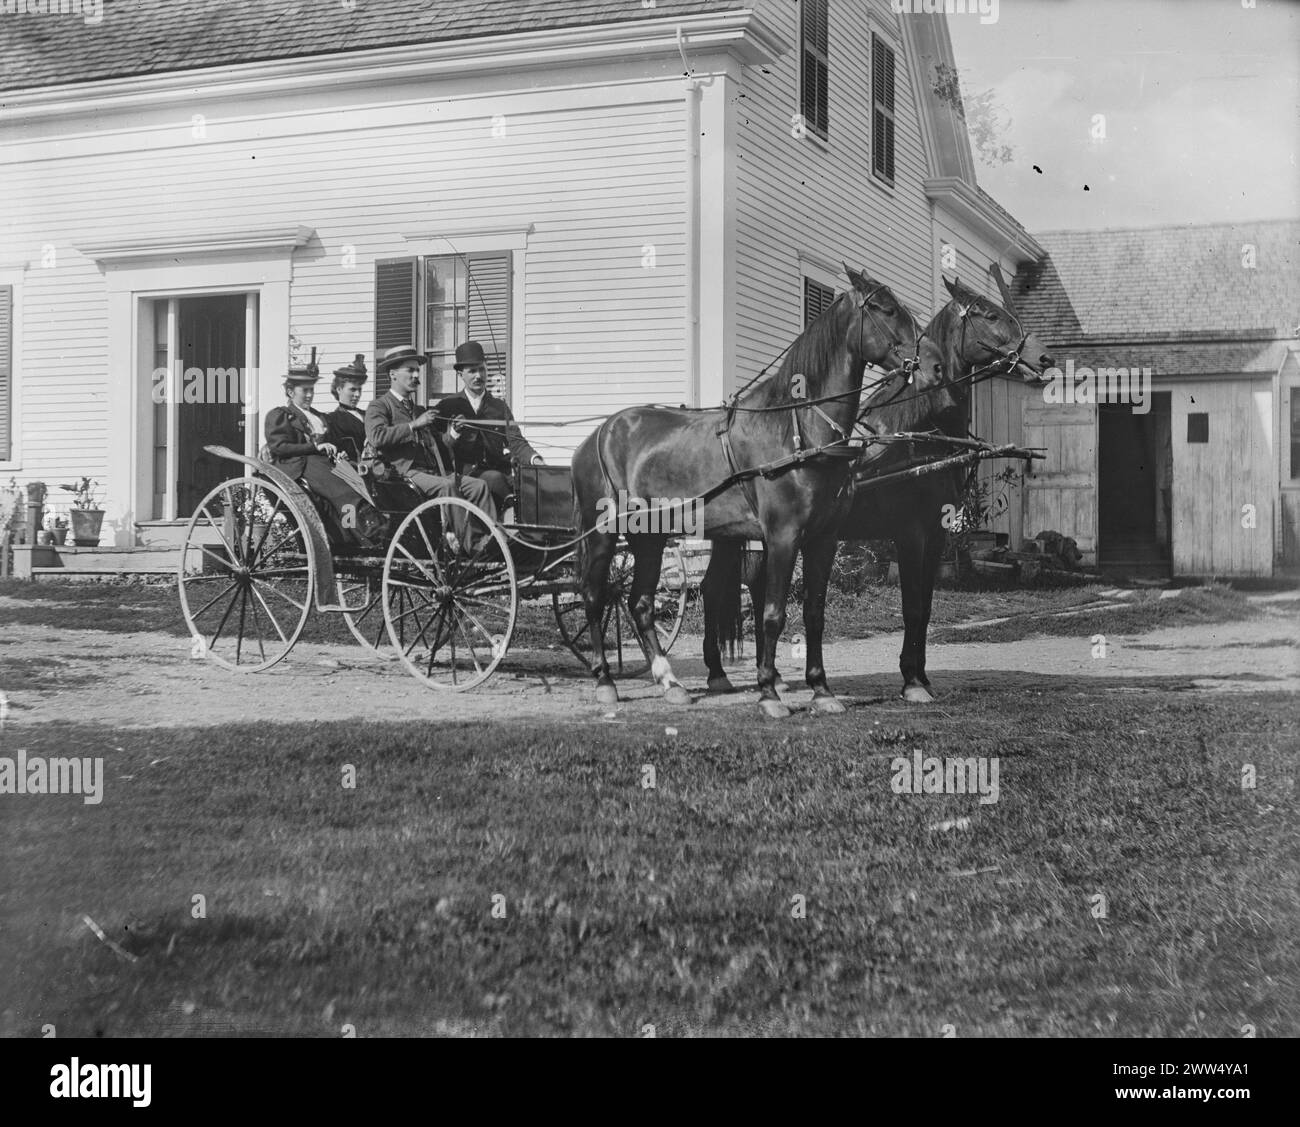 Vier Personen sitzen in einer offenen Pferdekutsche vor einem weißen Haus mit dunklen Fensterläden, schwarz-weiß abgebildet. New Brunswick, 26. August. 1893. Foto: Ervin S. Hubbard Stockfoto